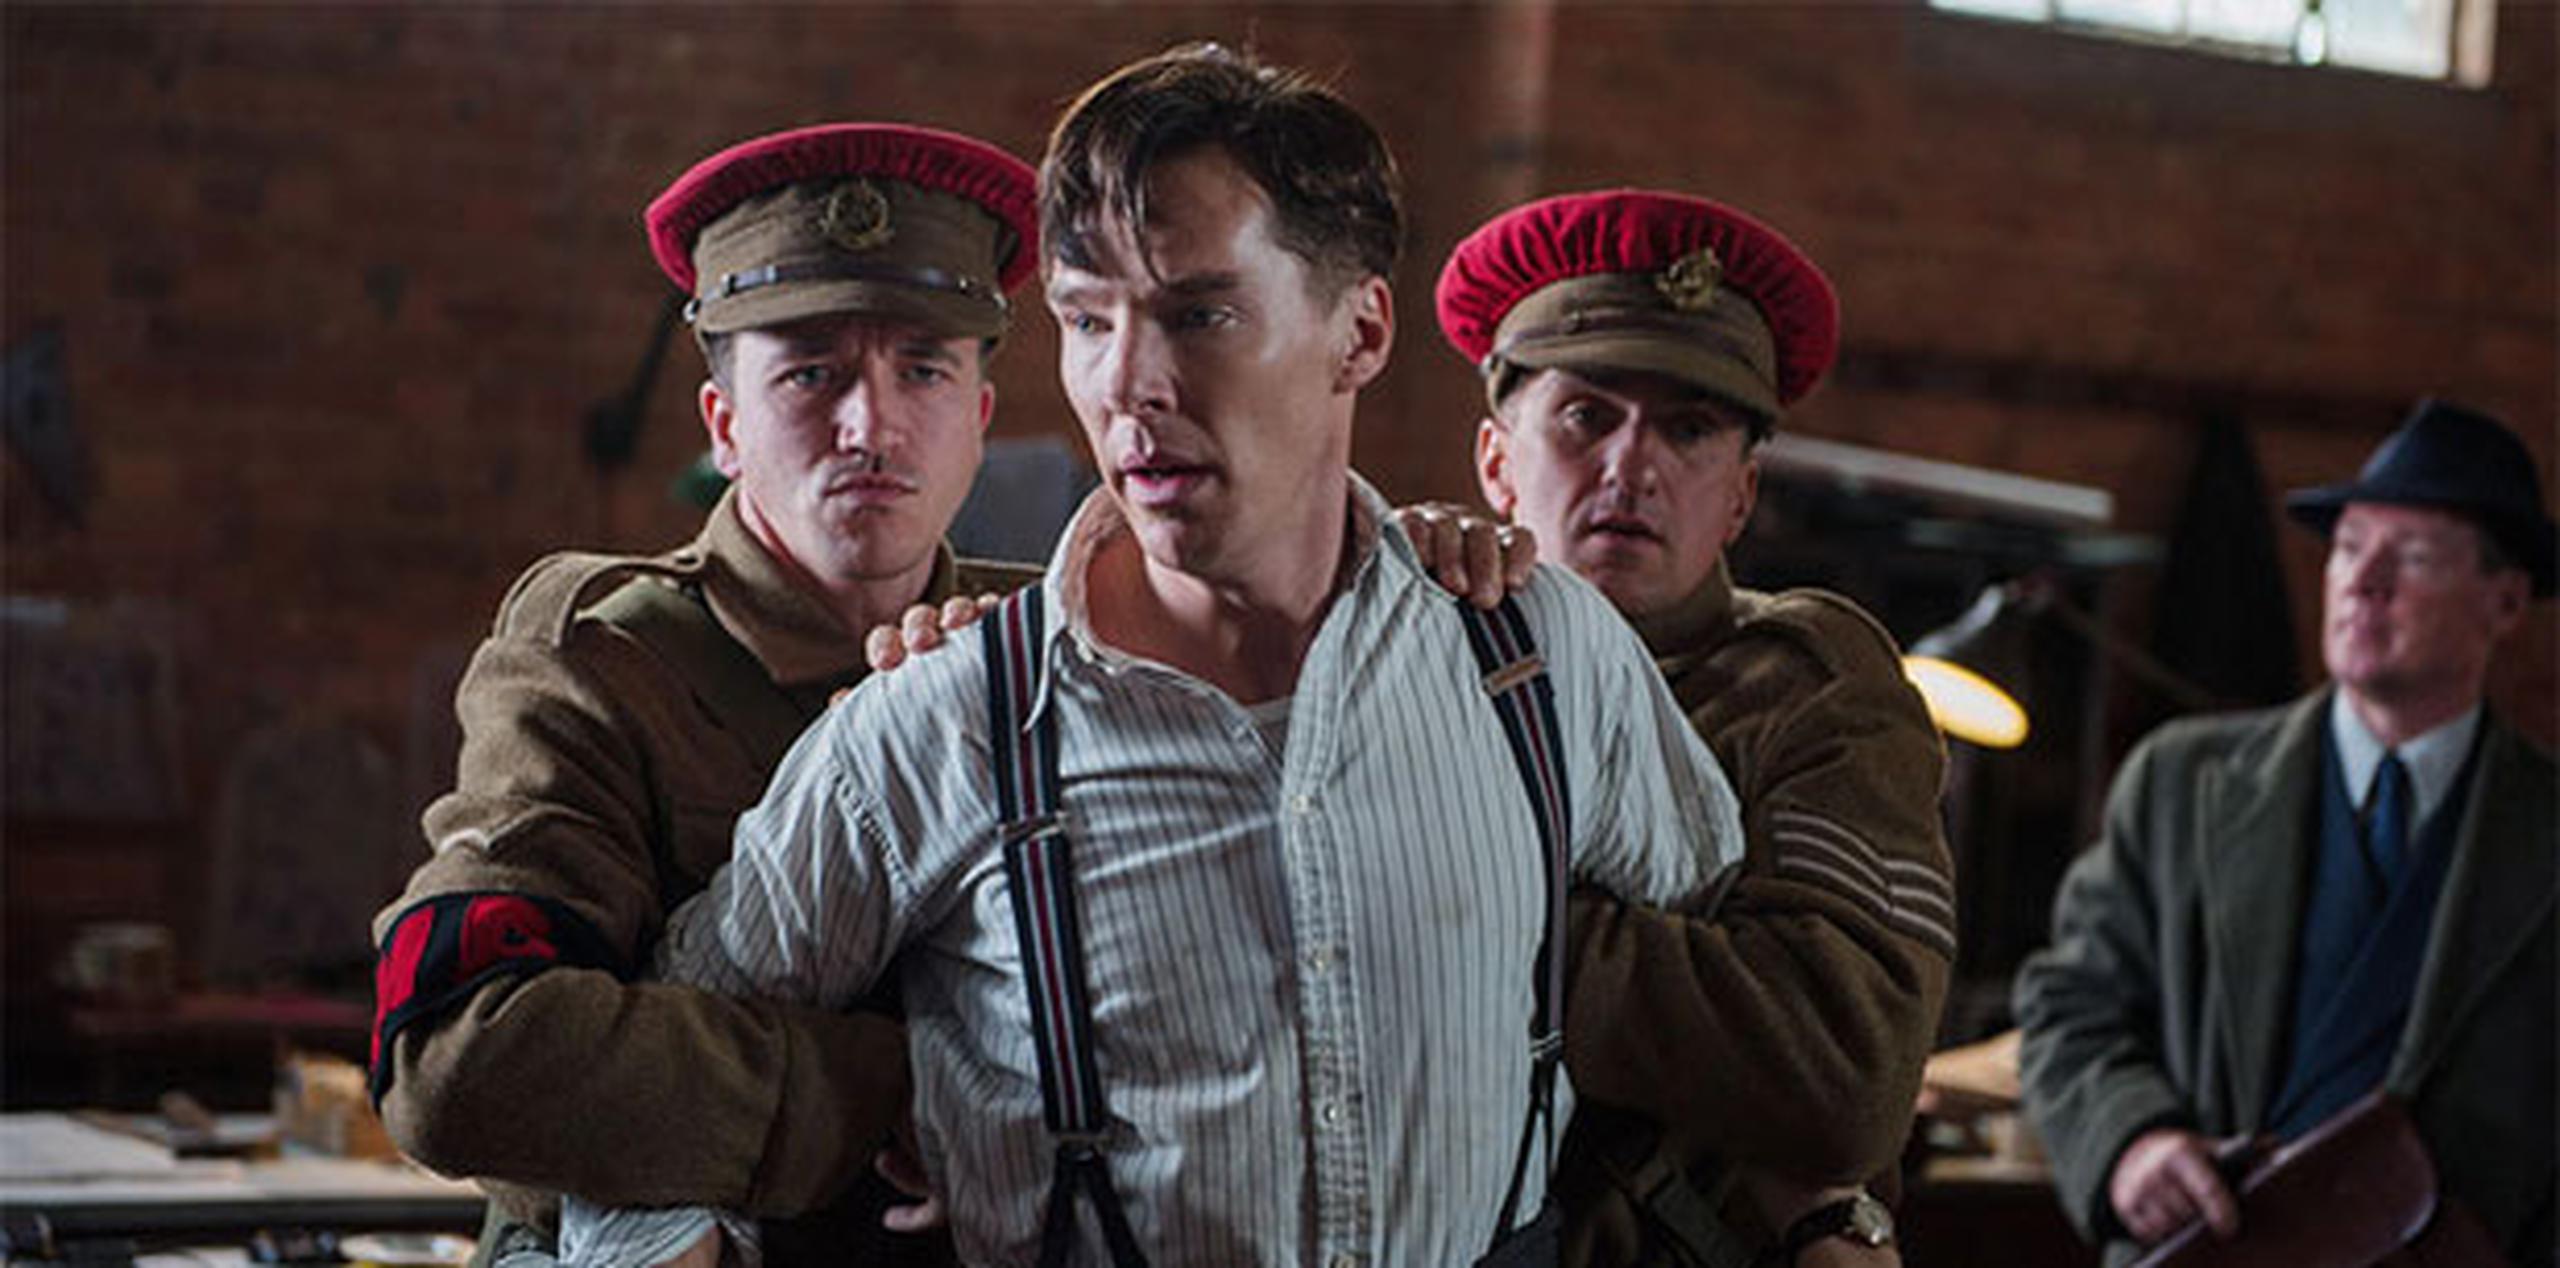 En "The Imitation Game", Benedict Cumberbatch interpreta al matemático británico Alan Turing, quien descifró el código secreto de Alemania en la Segunda Guerra Mundial.